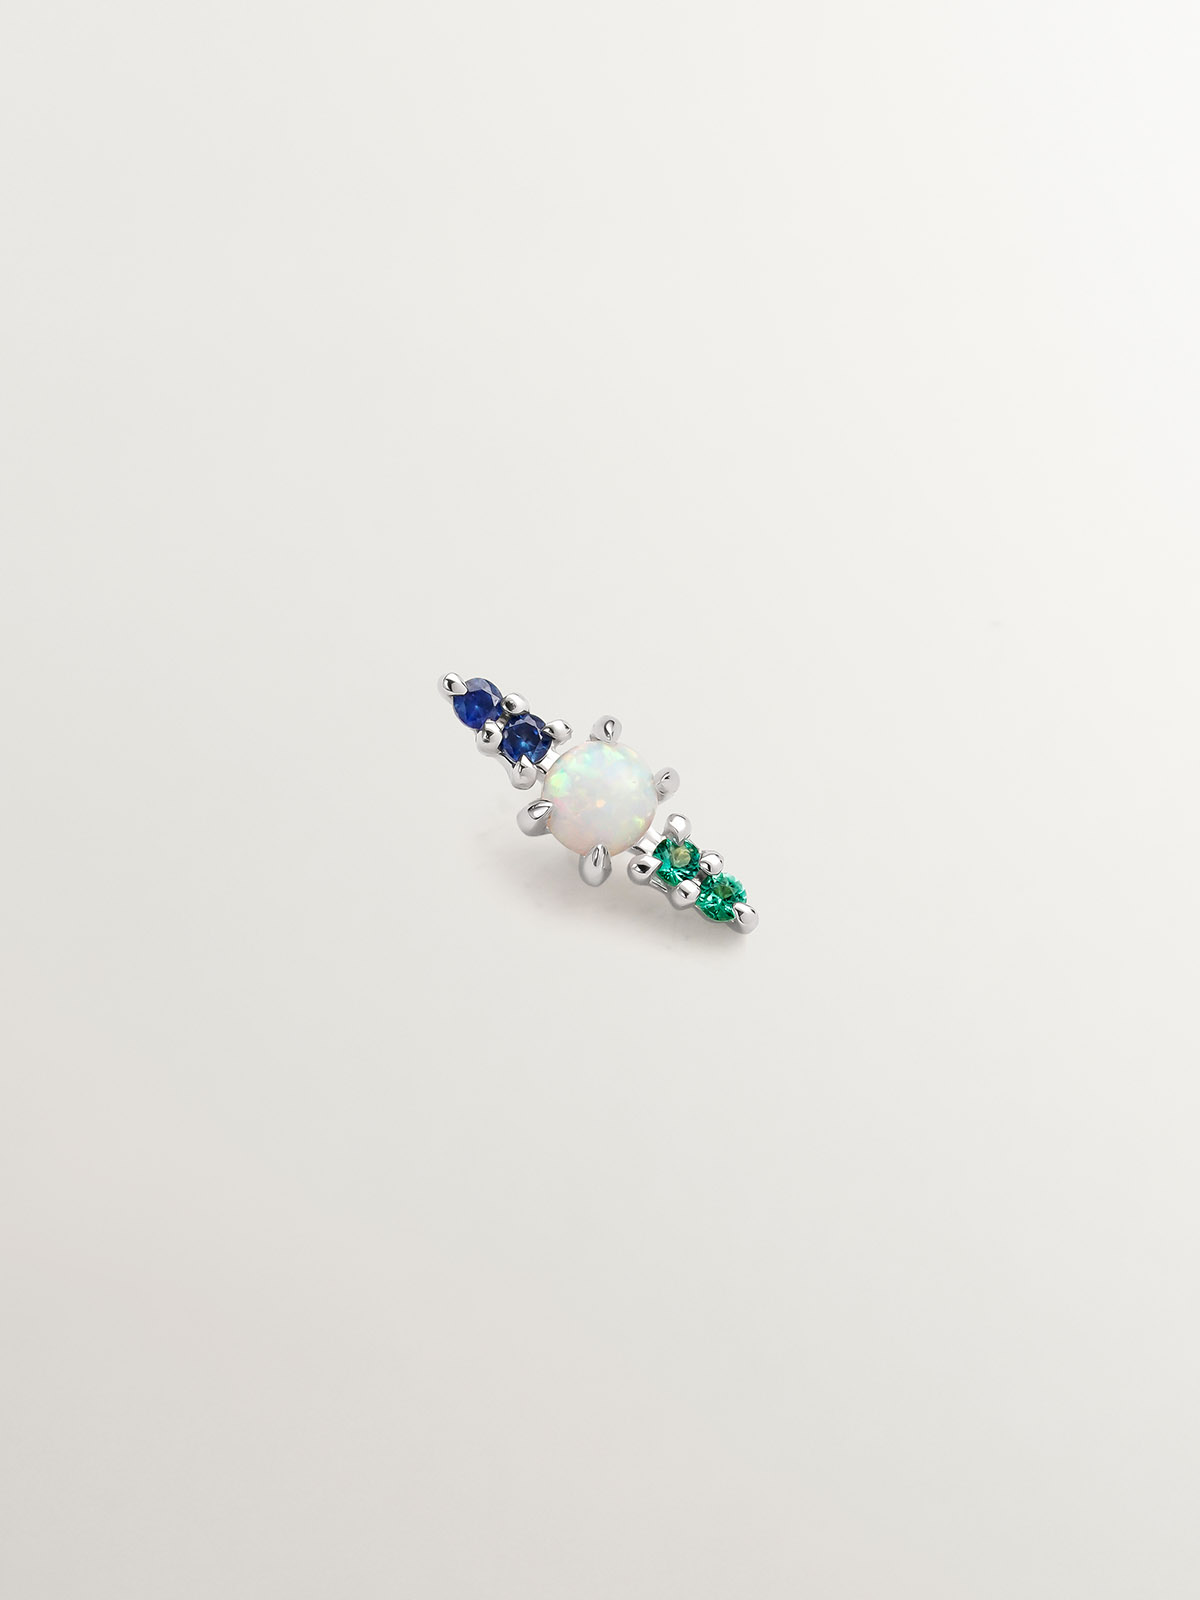 Pendiente individual de oro blanco de 18K con ópalo turquesa lab grown, zafiros azules y esmeraldas